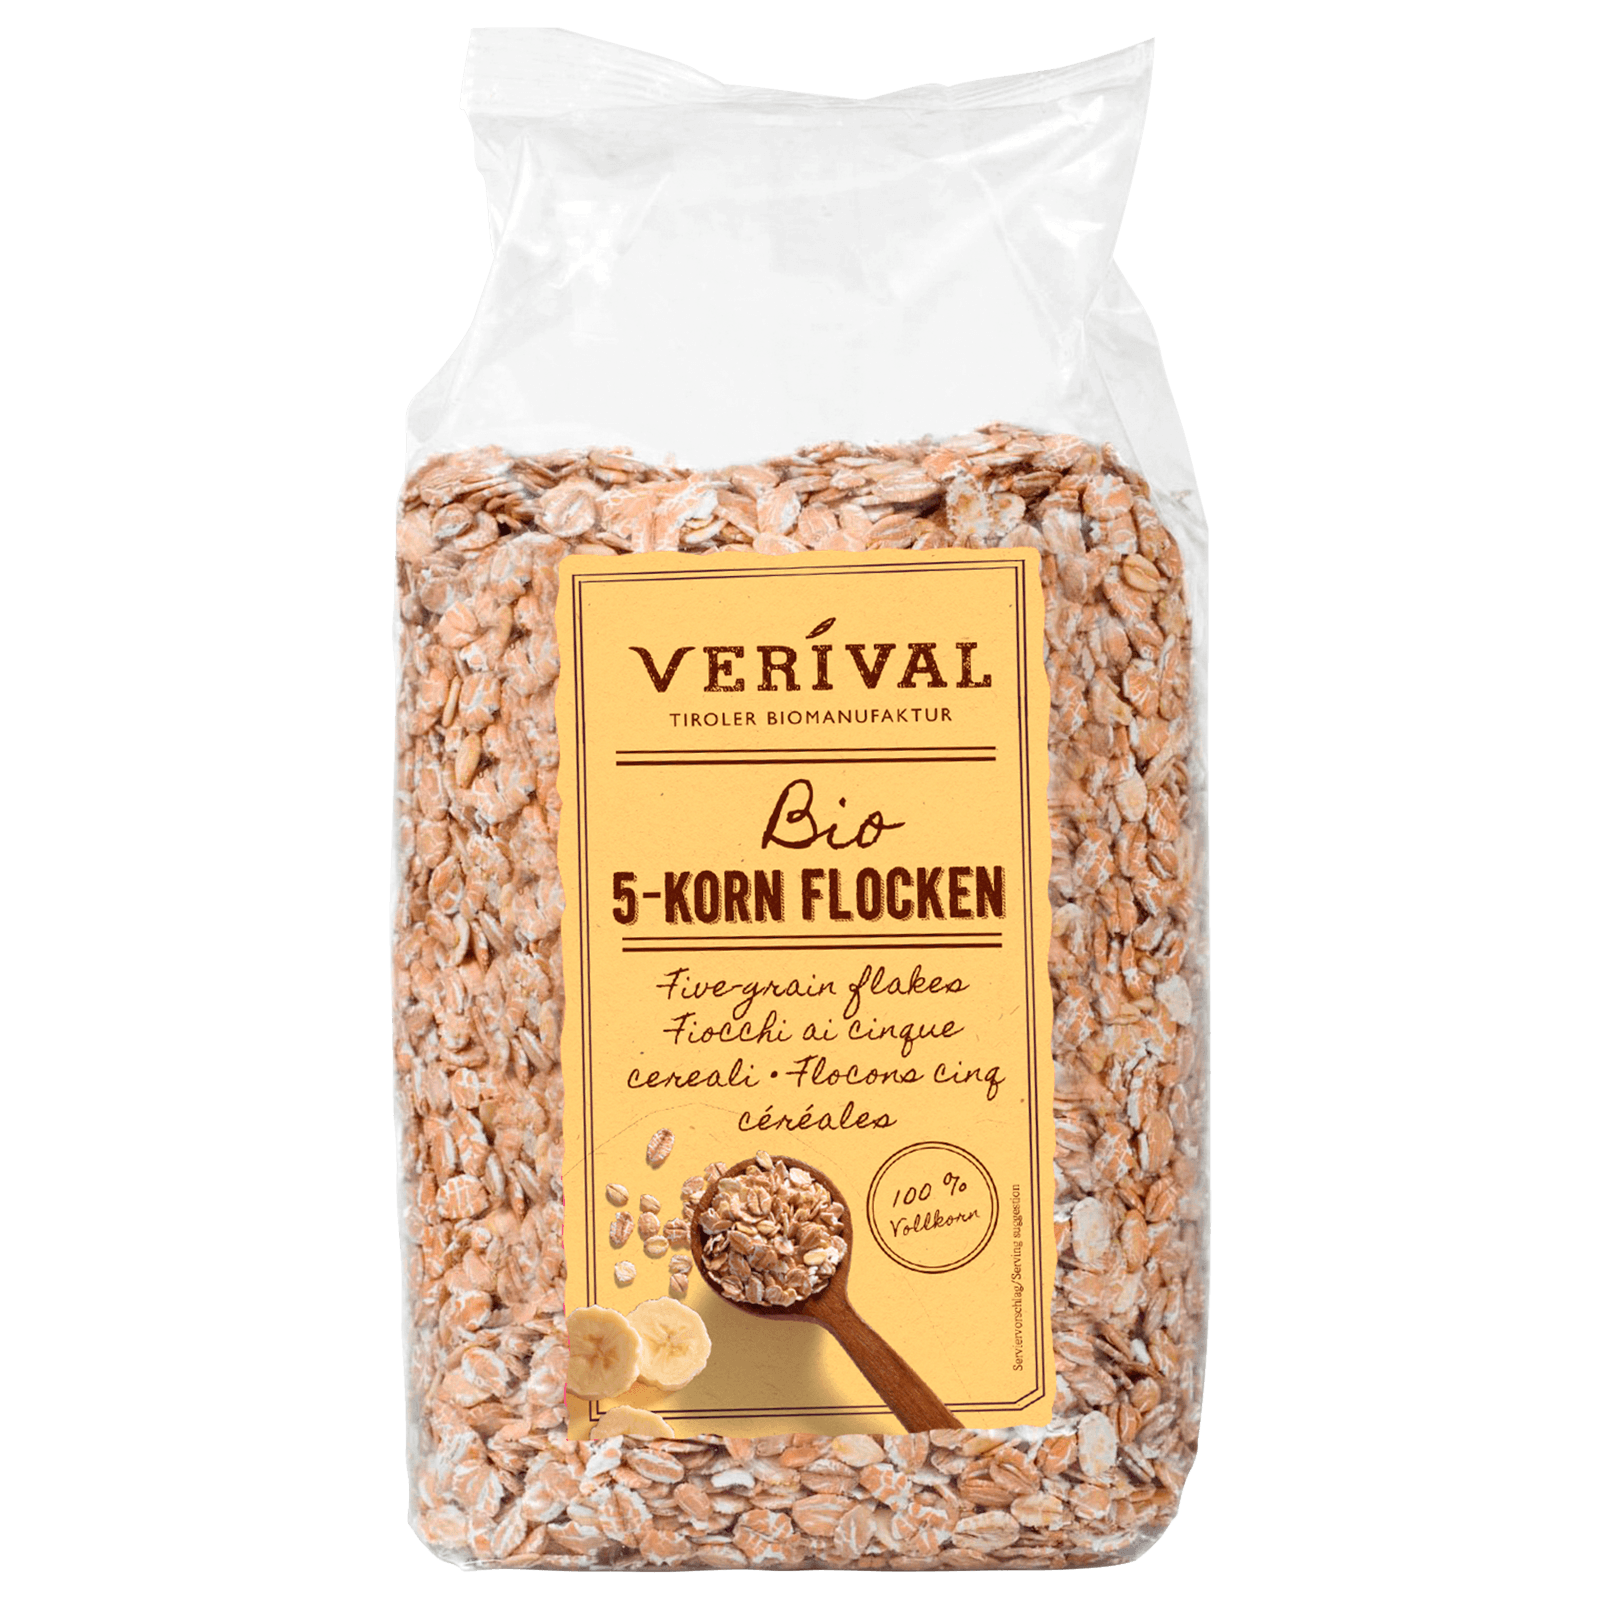 Verival Bio 5-Korn-Flocken 500g  für 1.99 EUR